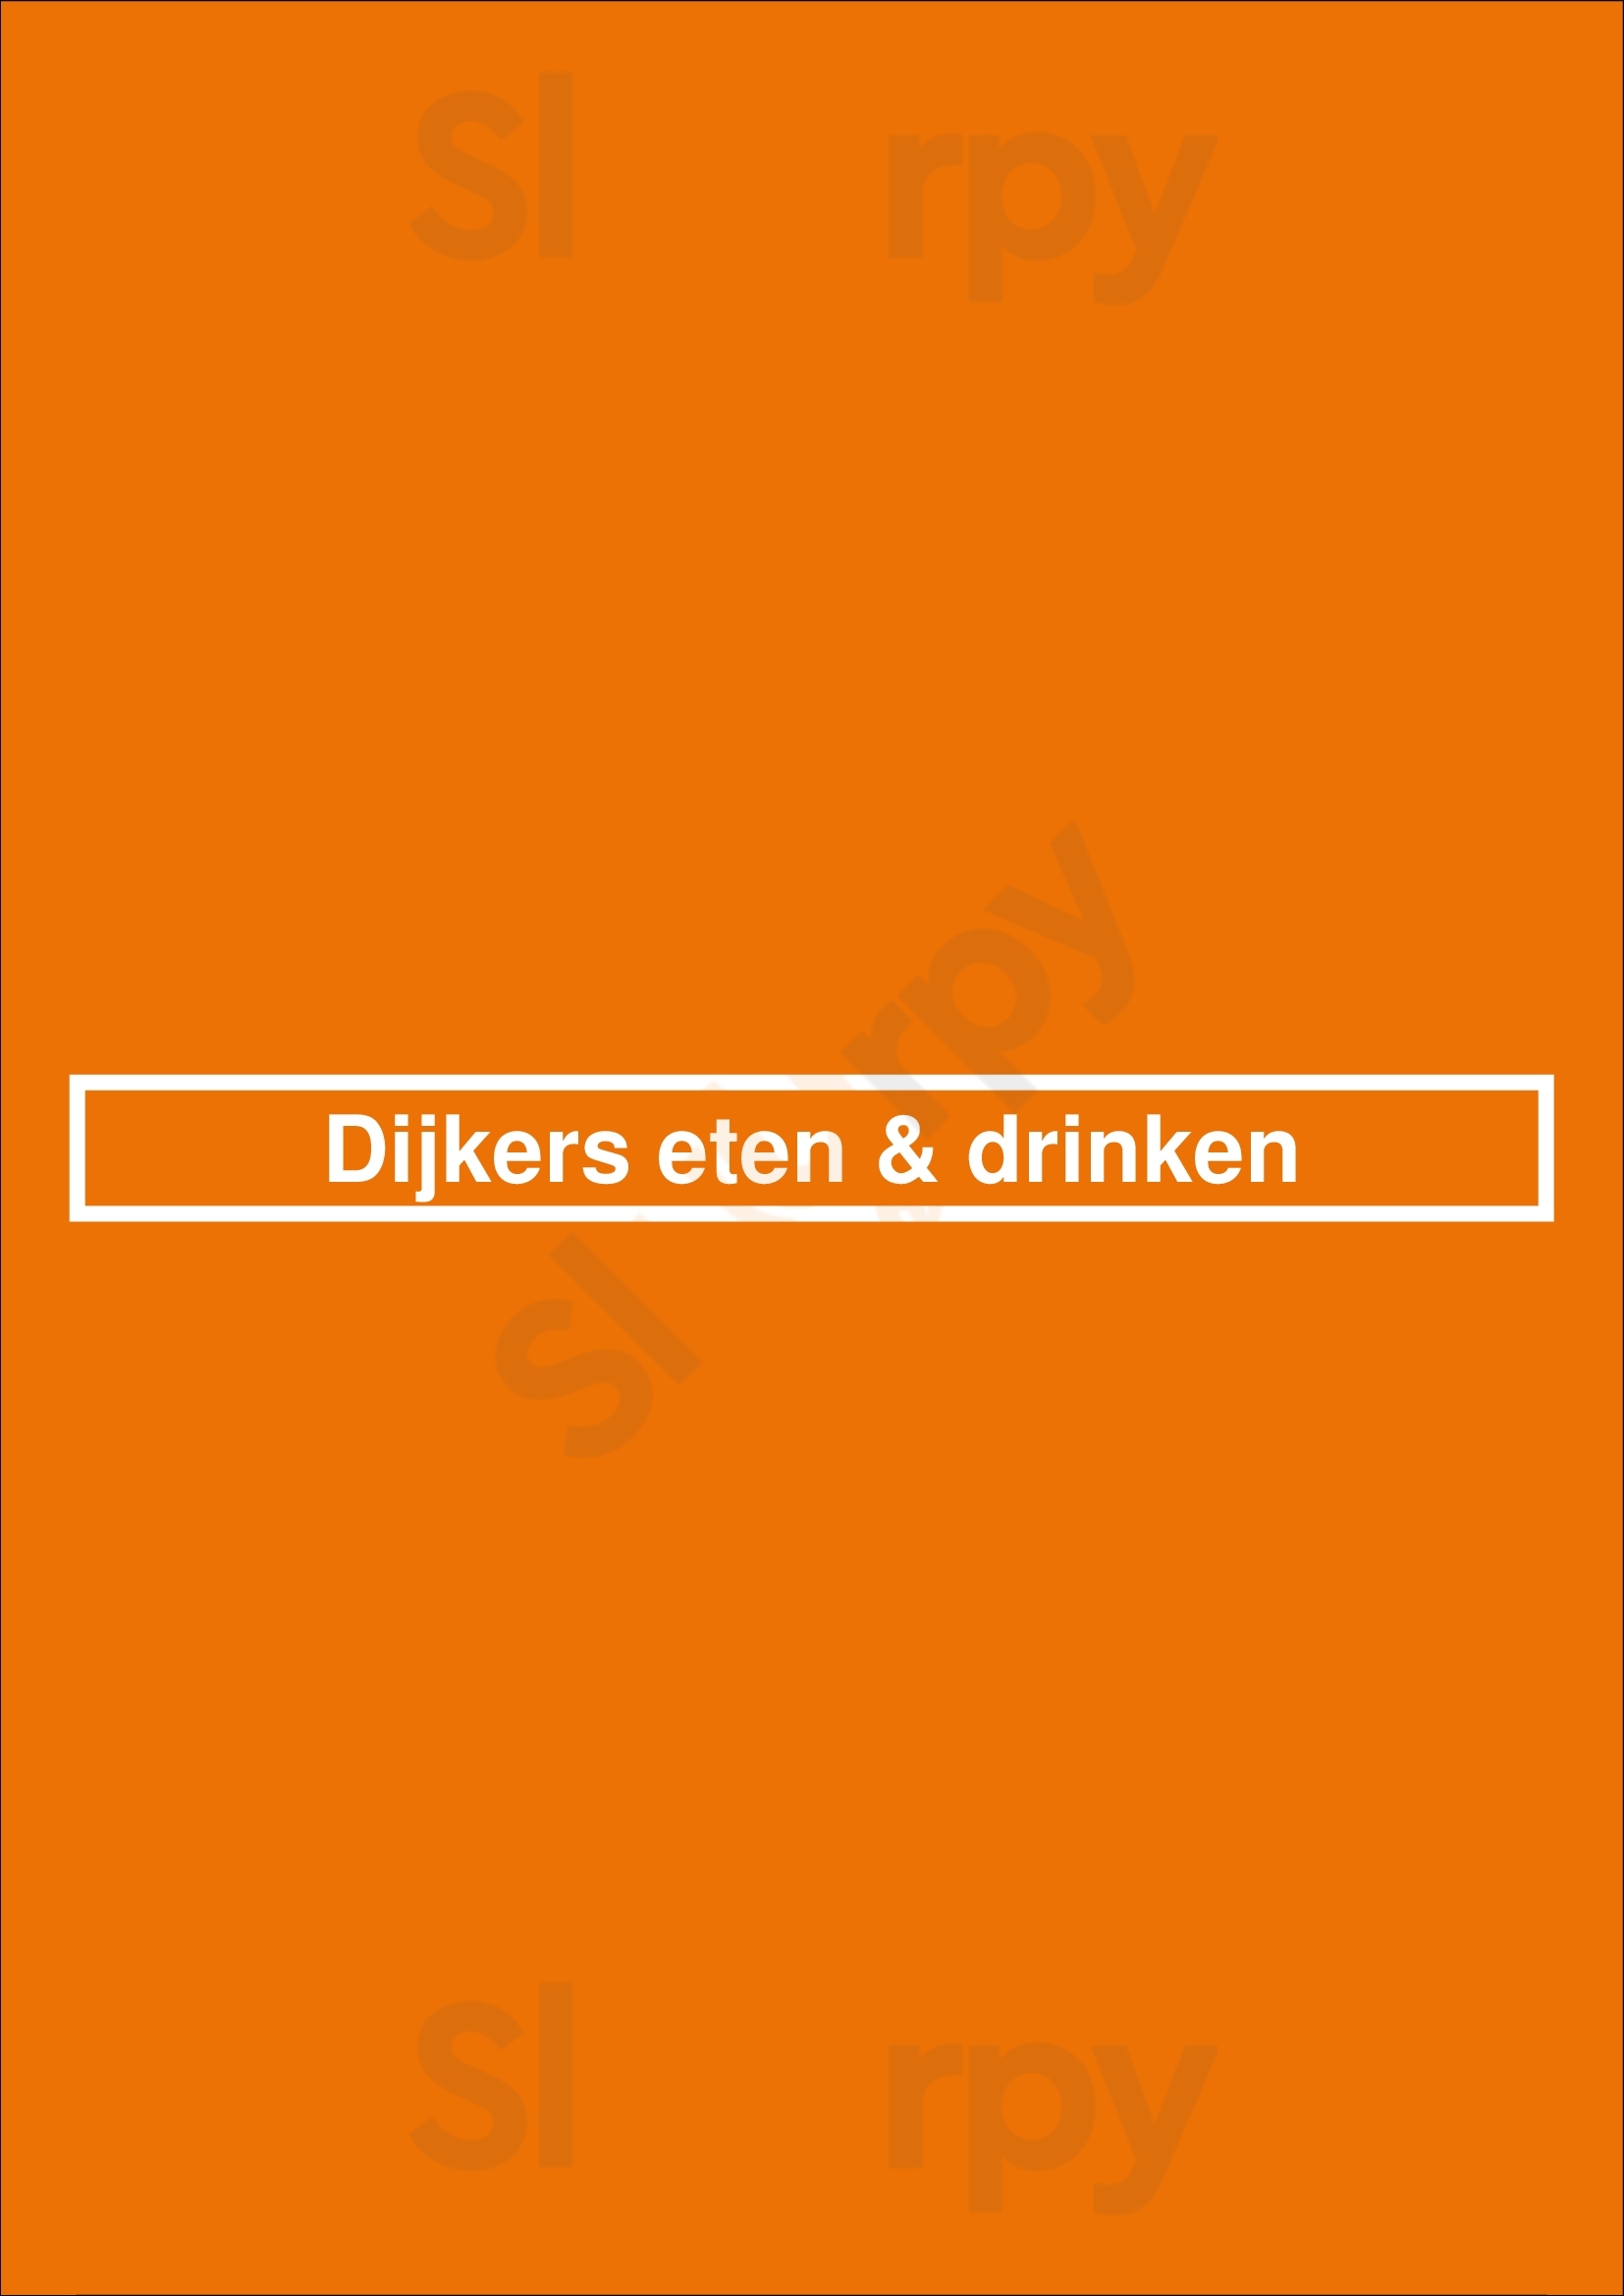 Dijkers Eten & Drinken Haarlem Menu - 1